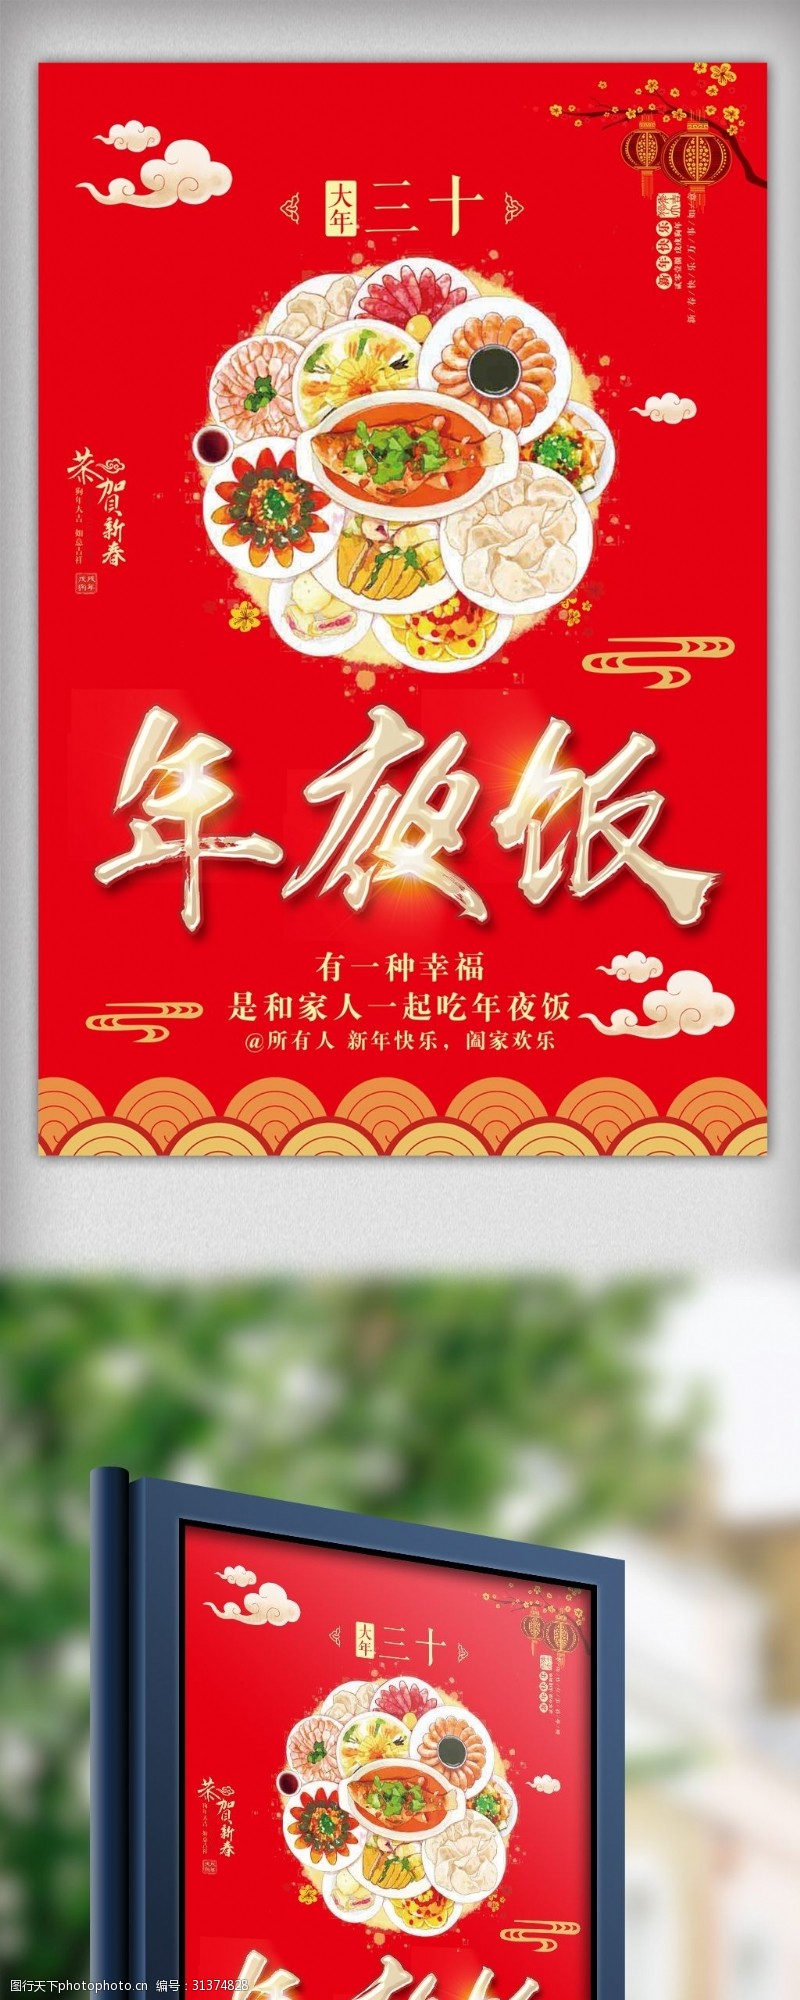 合家欢乐中国风年夜饭宣传海报设计